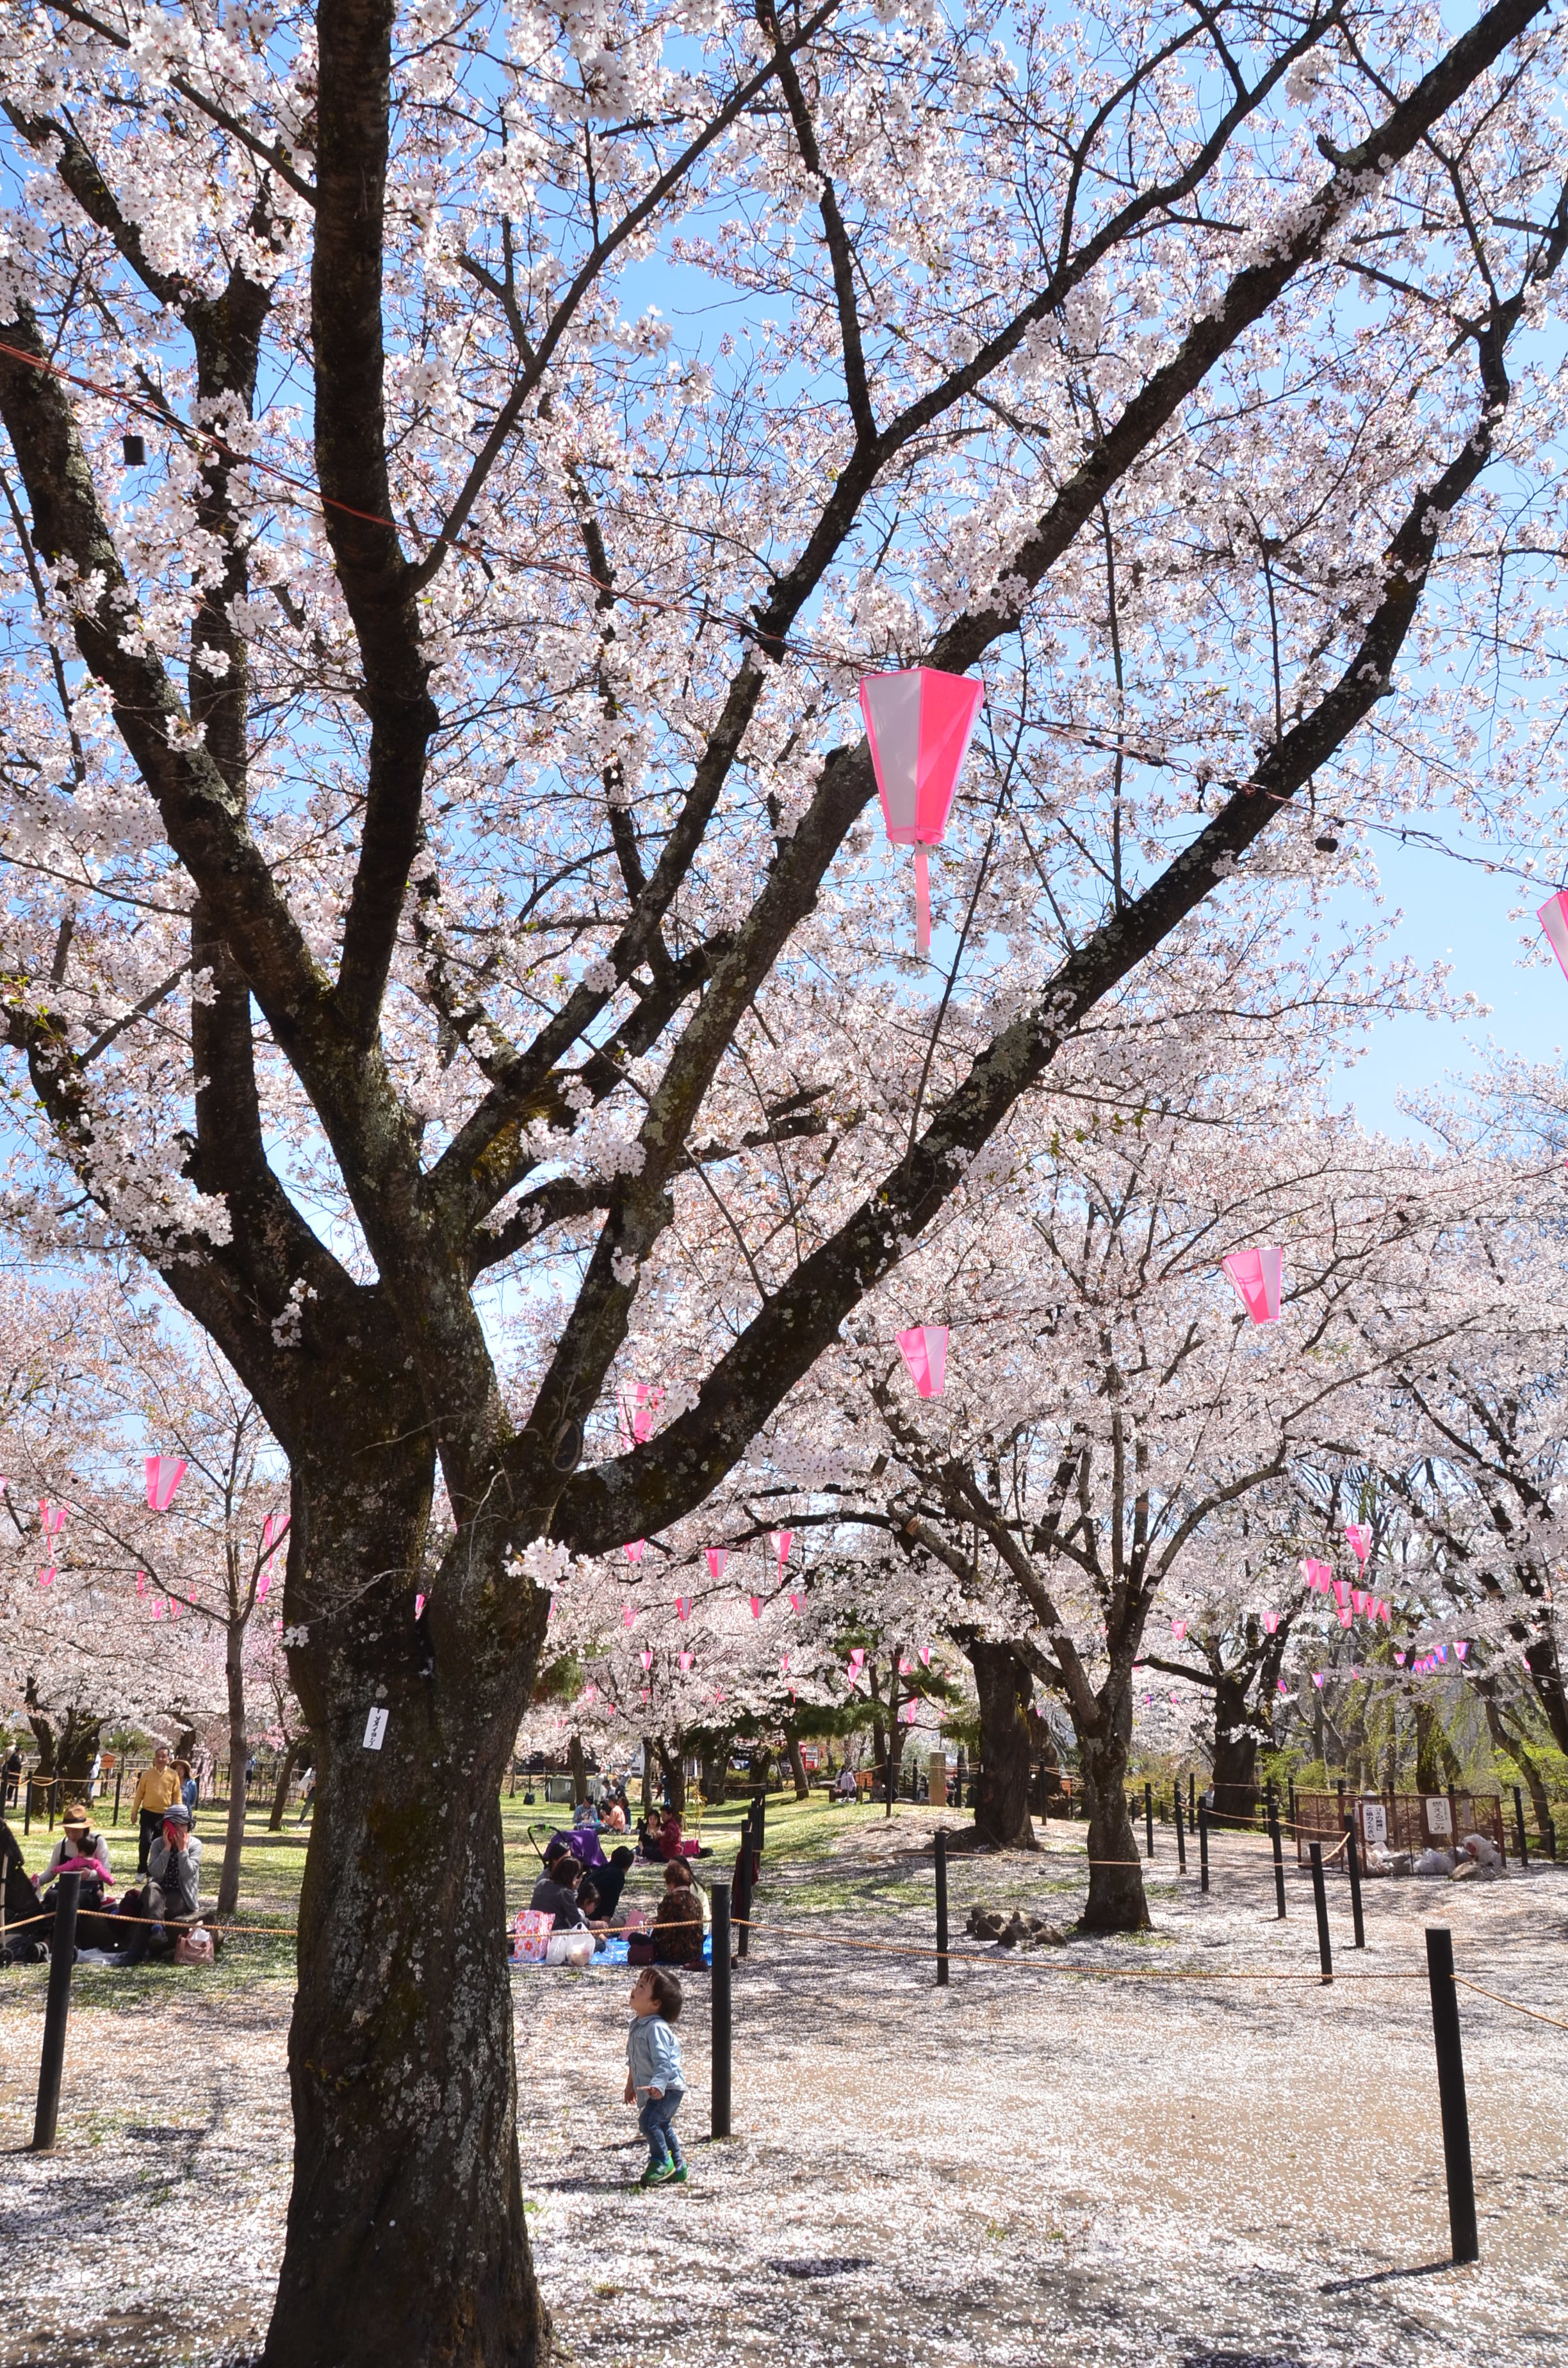 お花見と「こもろ」の美味しいを楽しむ
「KOMORO FOOD MARKET」も！
長野県小諸市 小諸城址懐古園「桜まつり」が開催